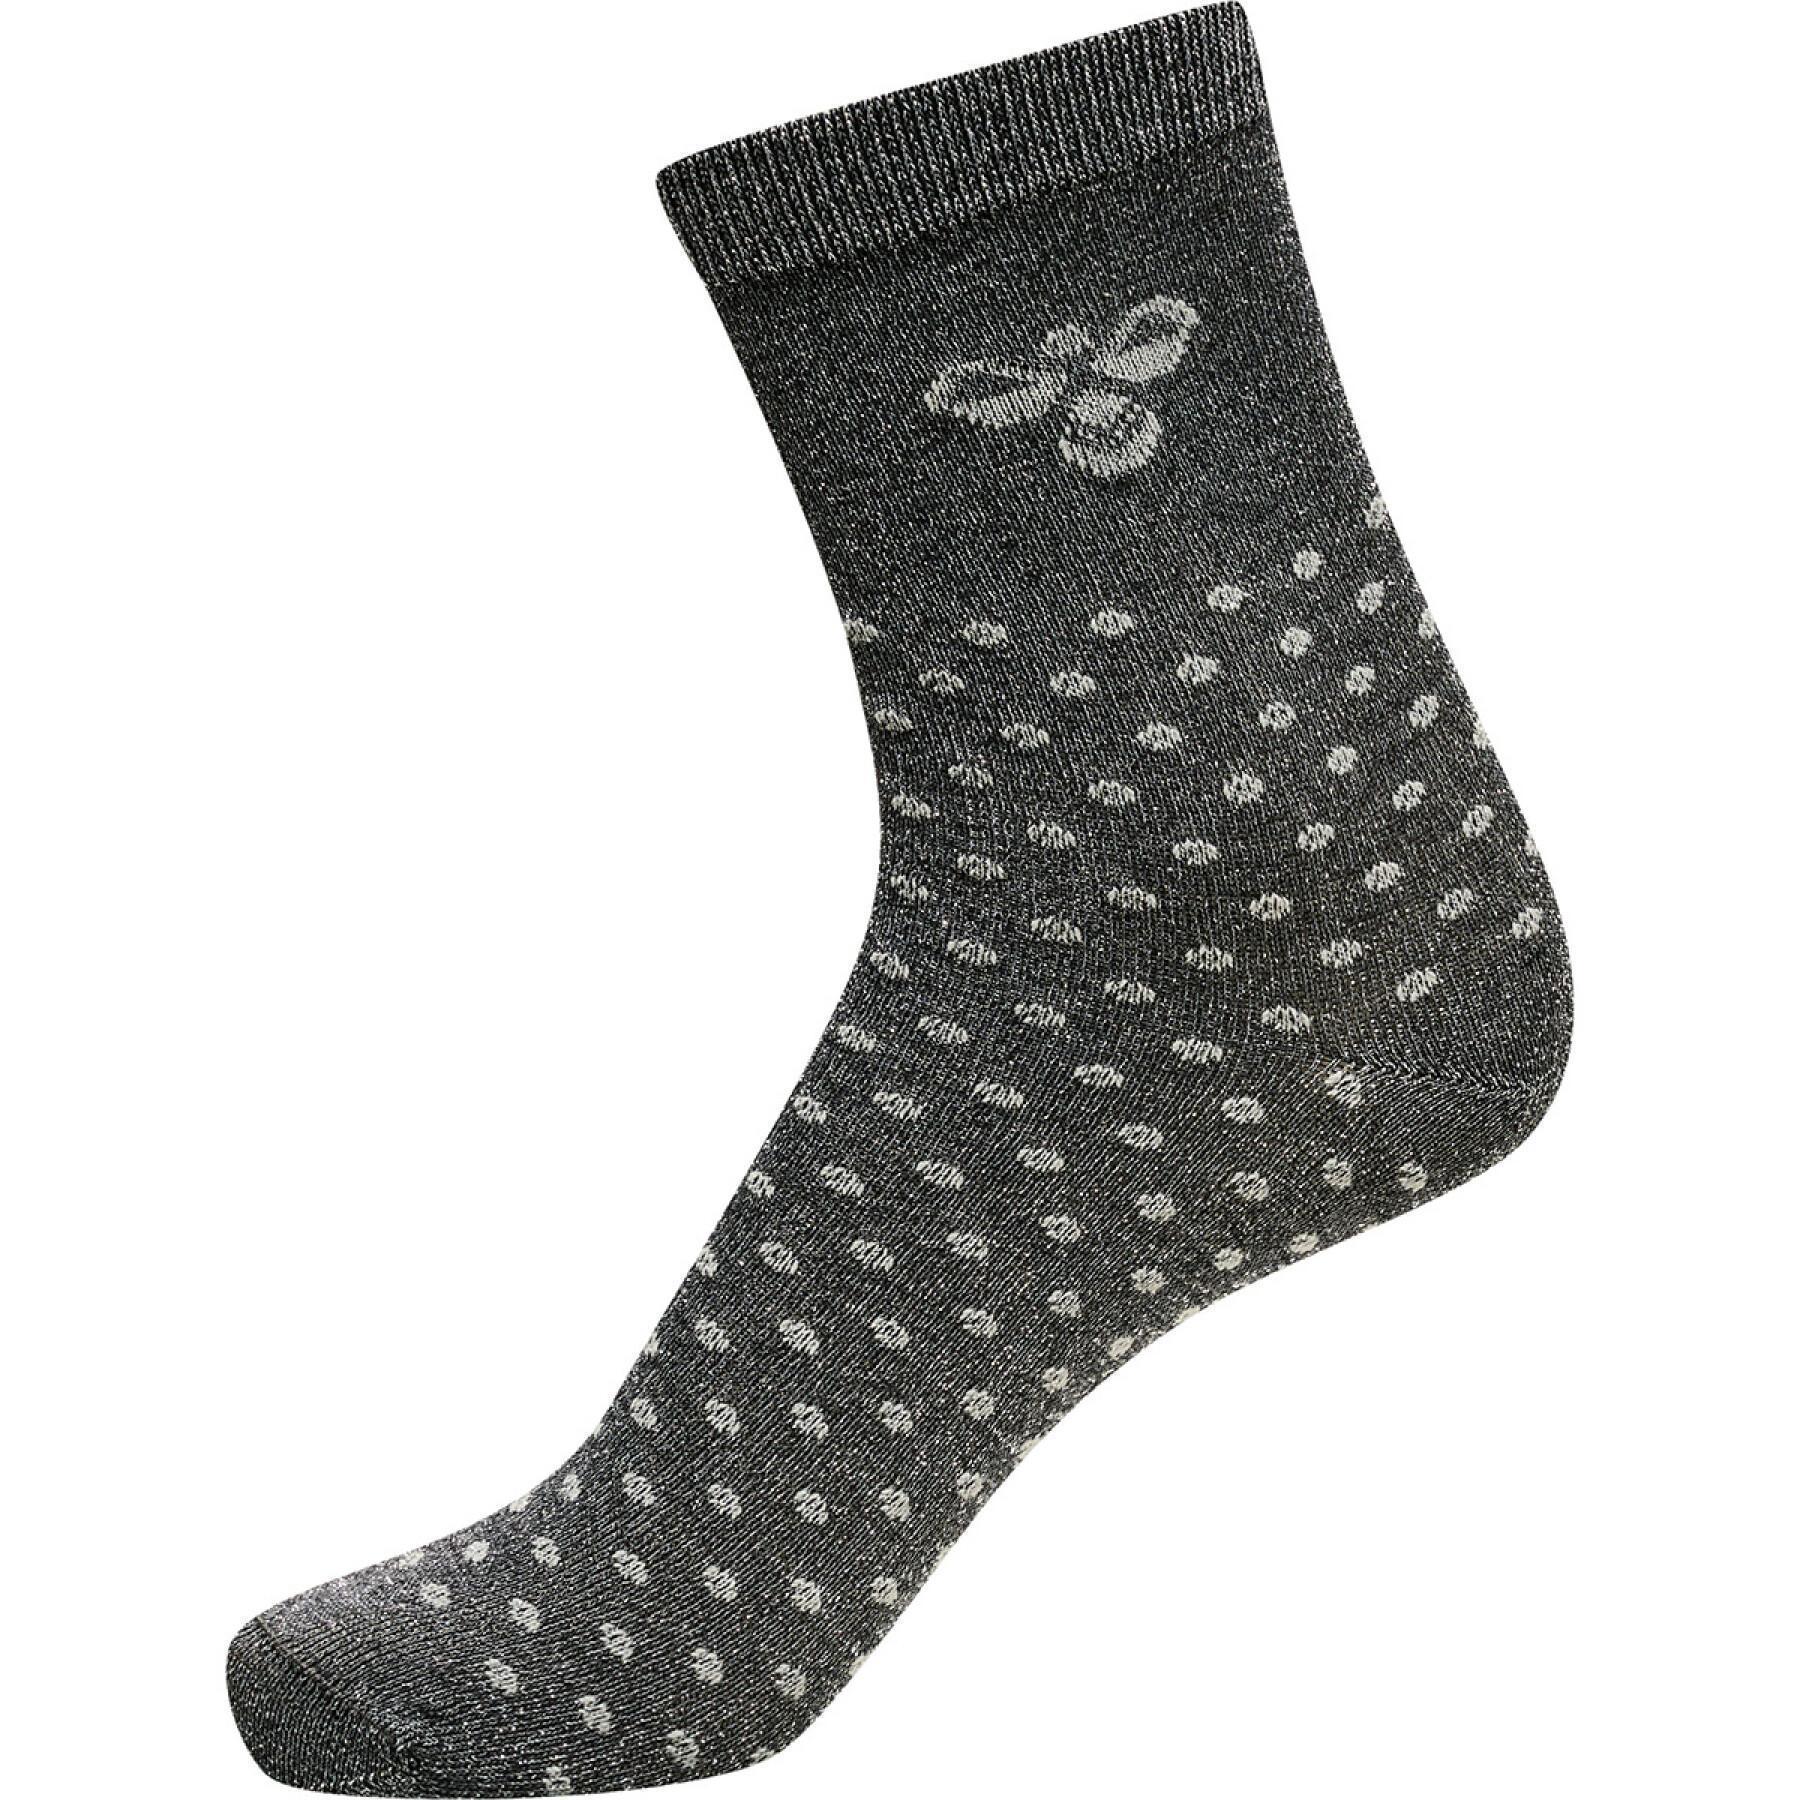 Children's socks Hummel hmlBETA 3-PACK